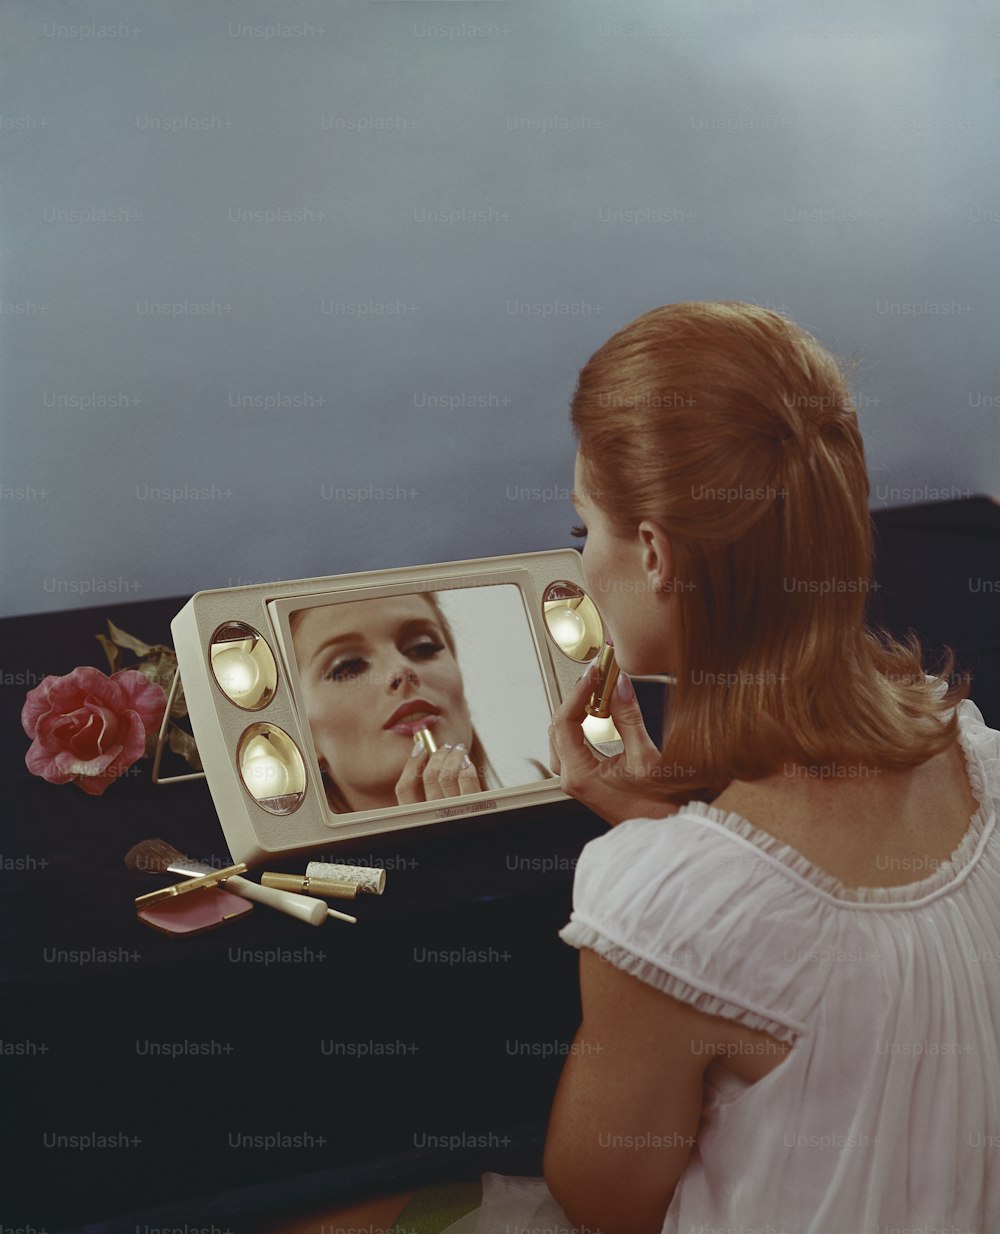 Una donna che guarda il suo riflesso in uno specchio